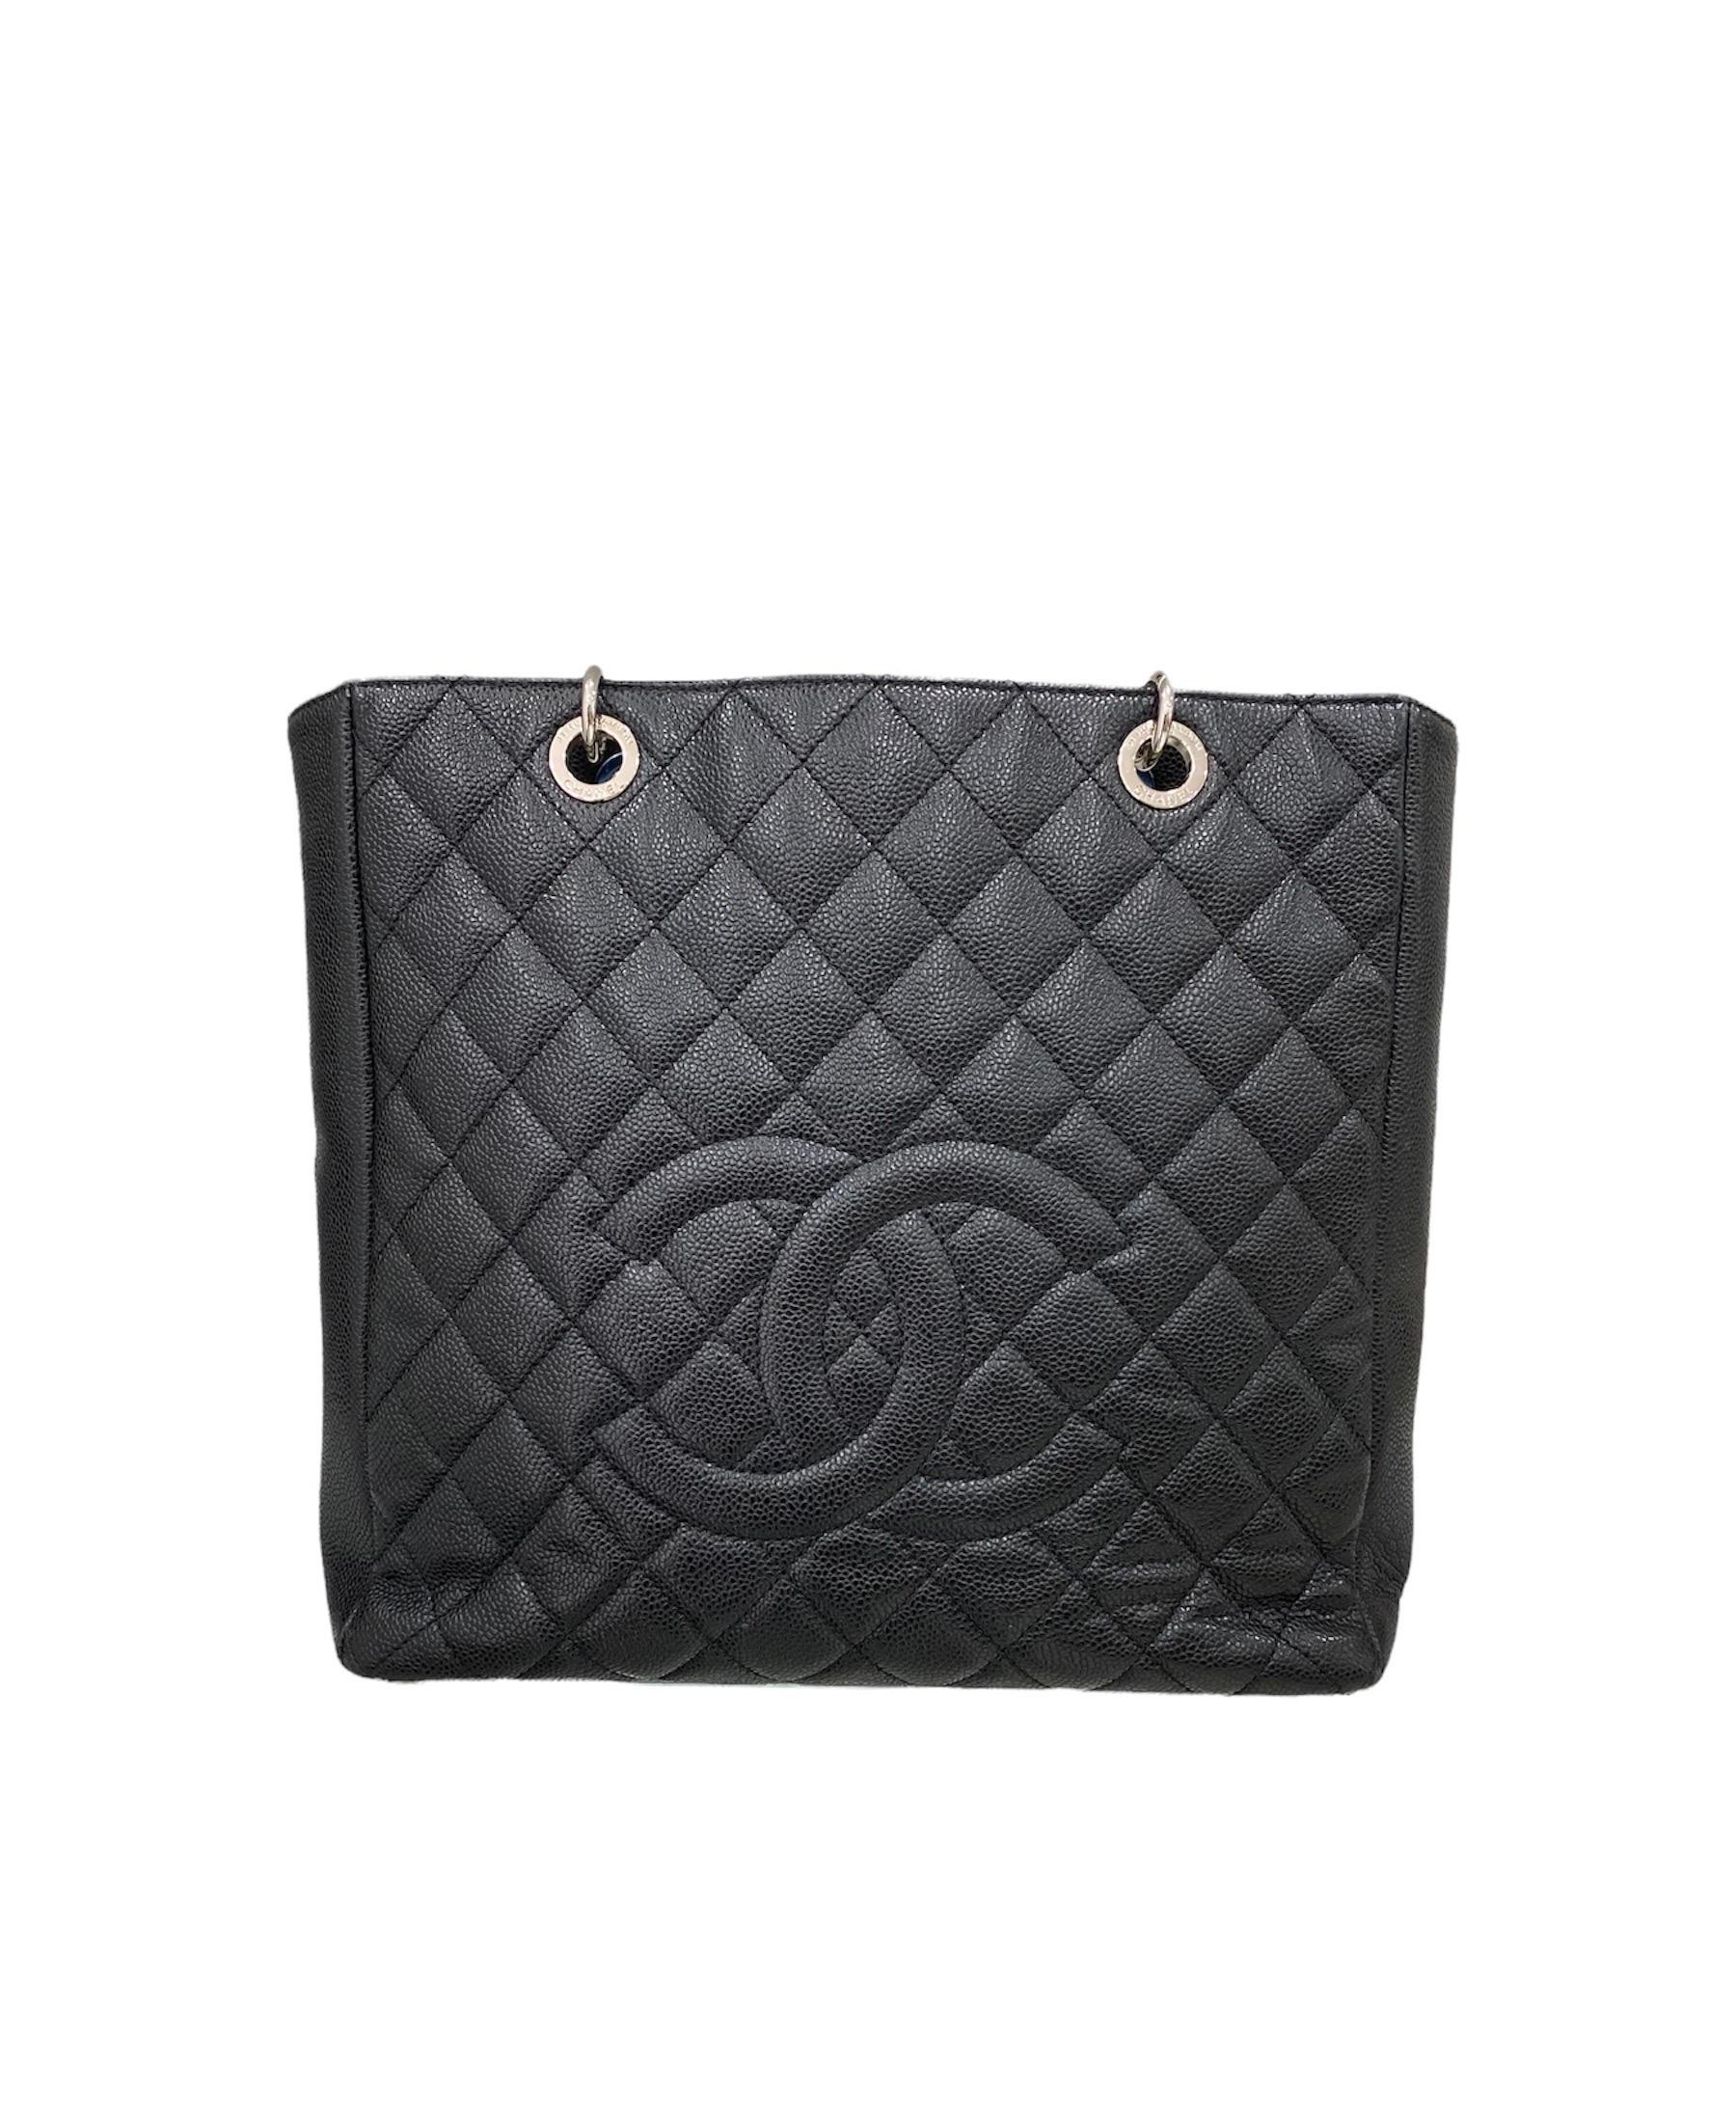 2013 Chanel PST Black Caviar Leather Shoulder Bag  1